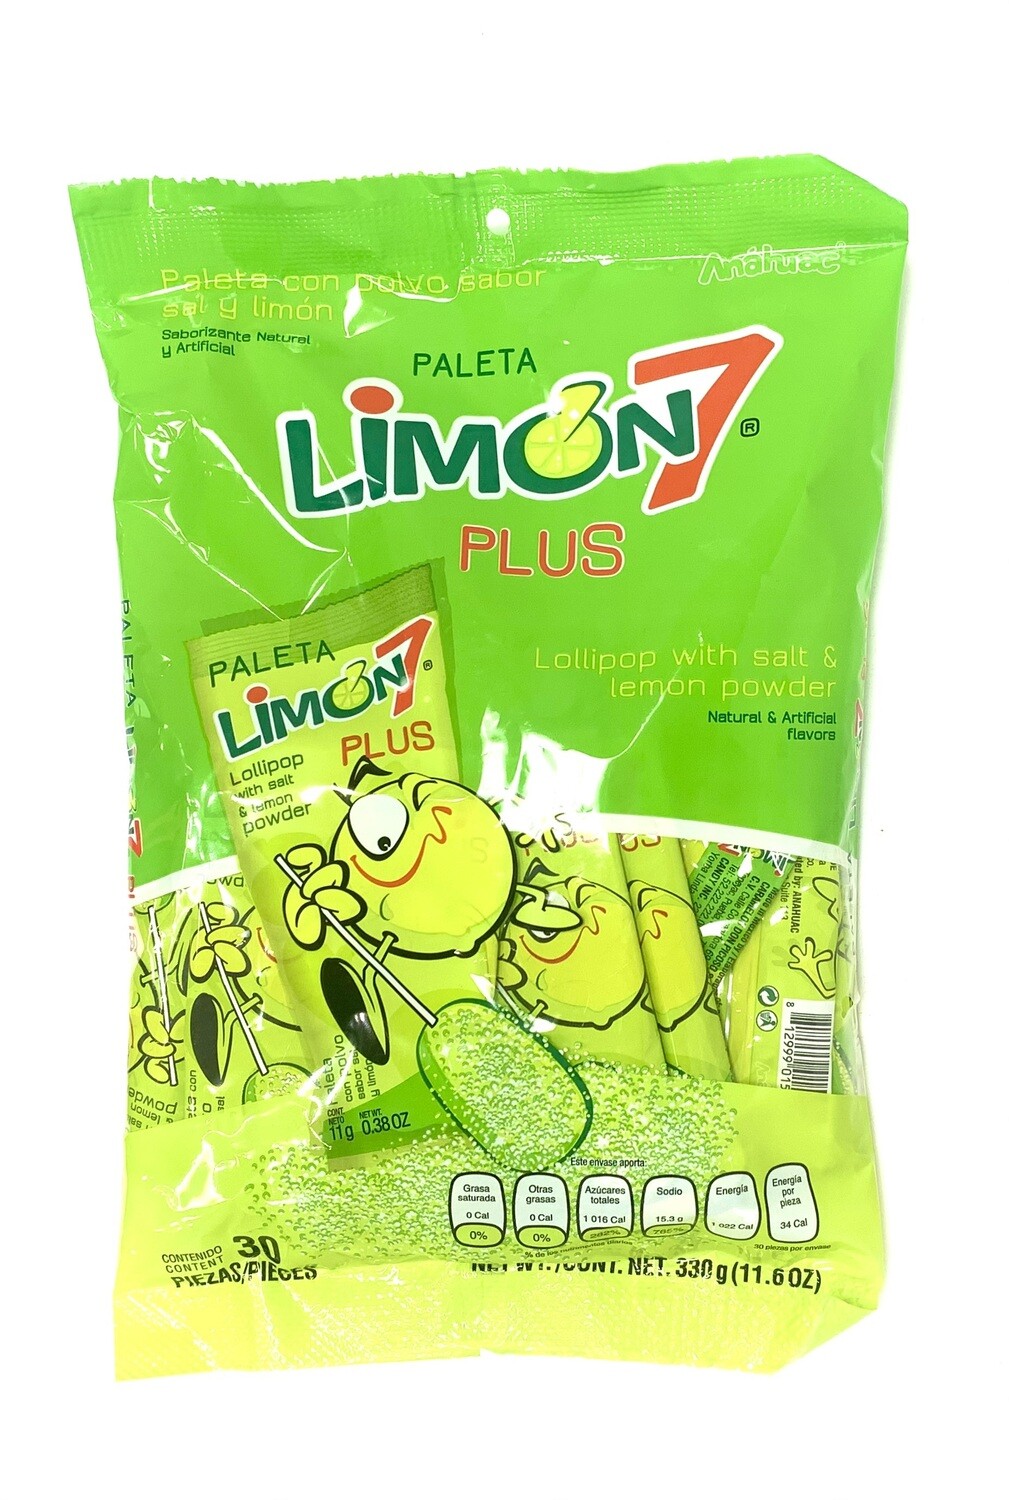 Limon 7 Paleta Plus w/lemon Powder 30ct